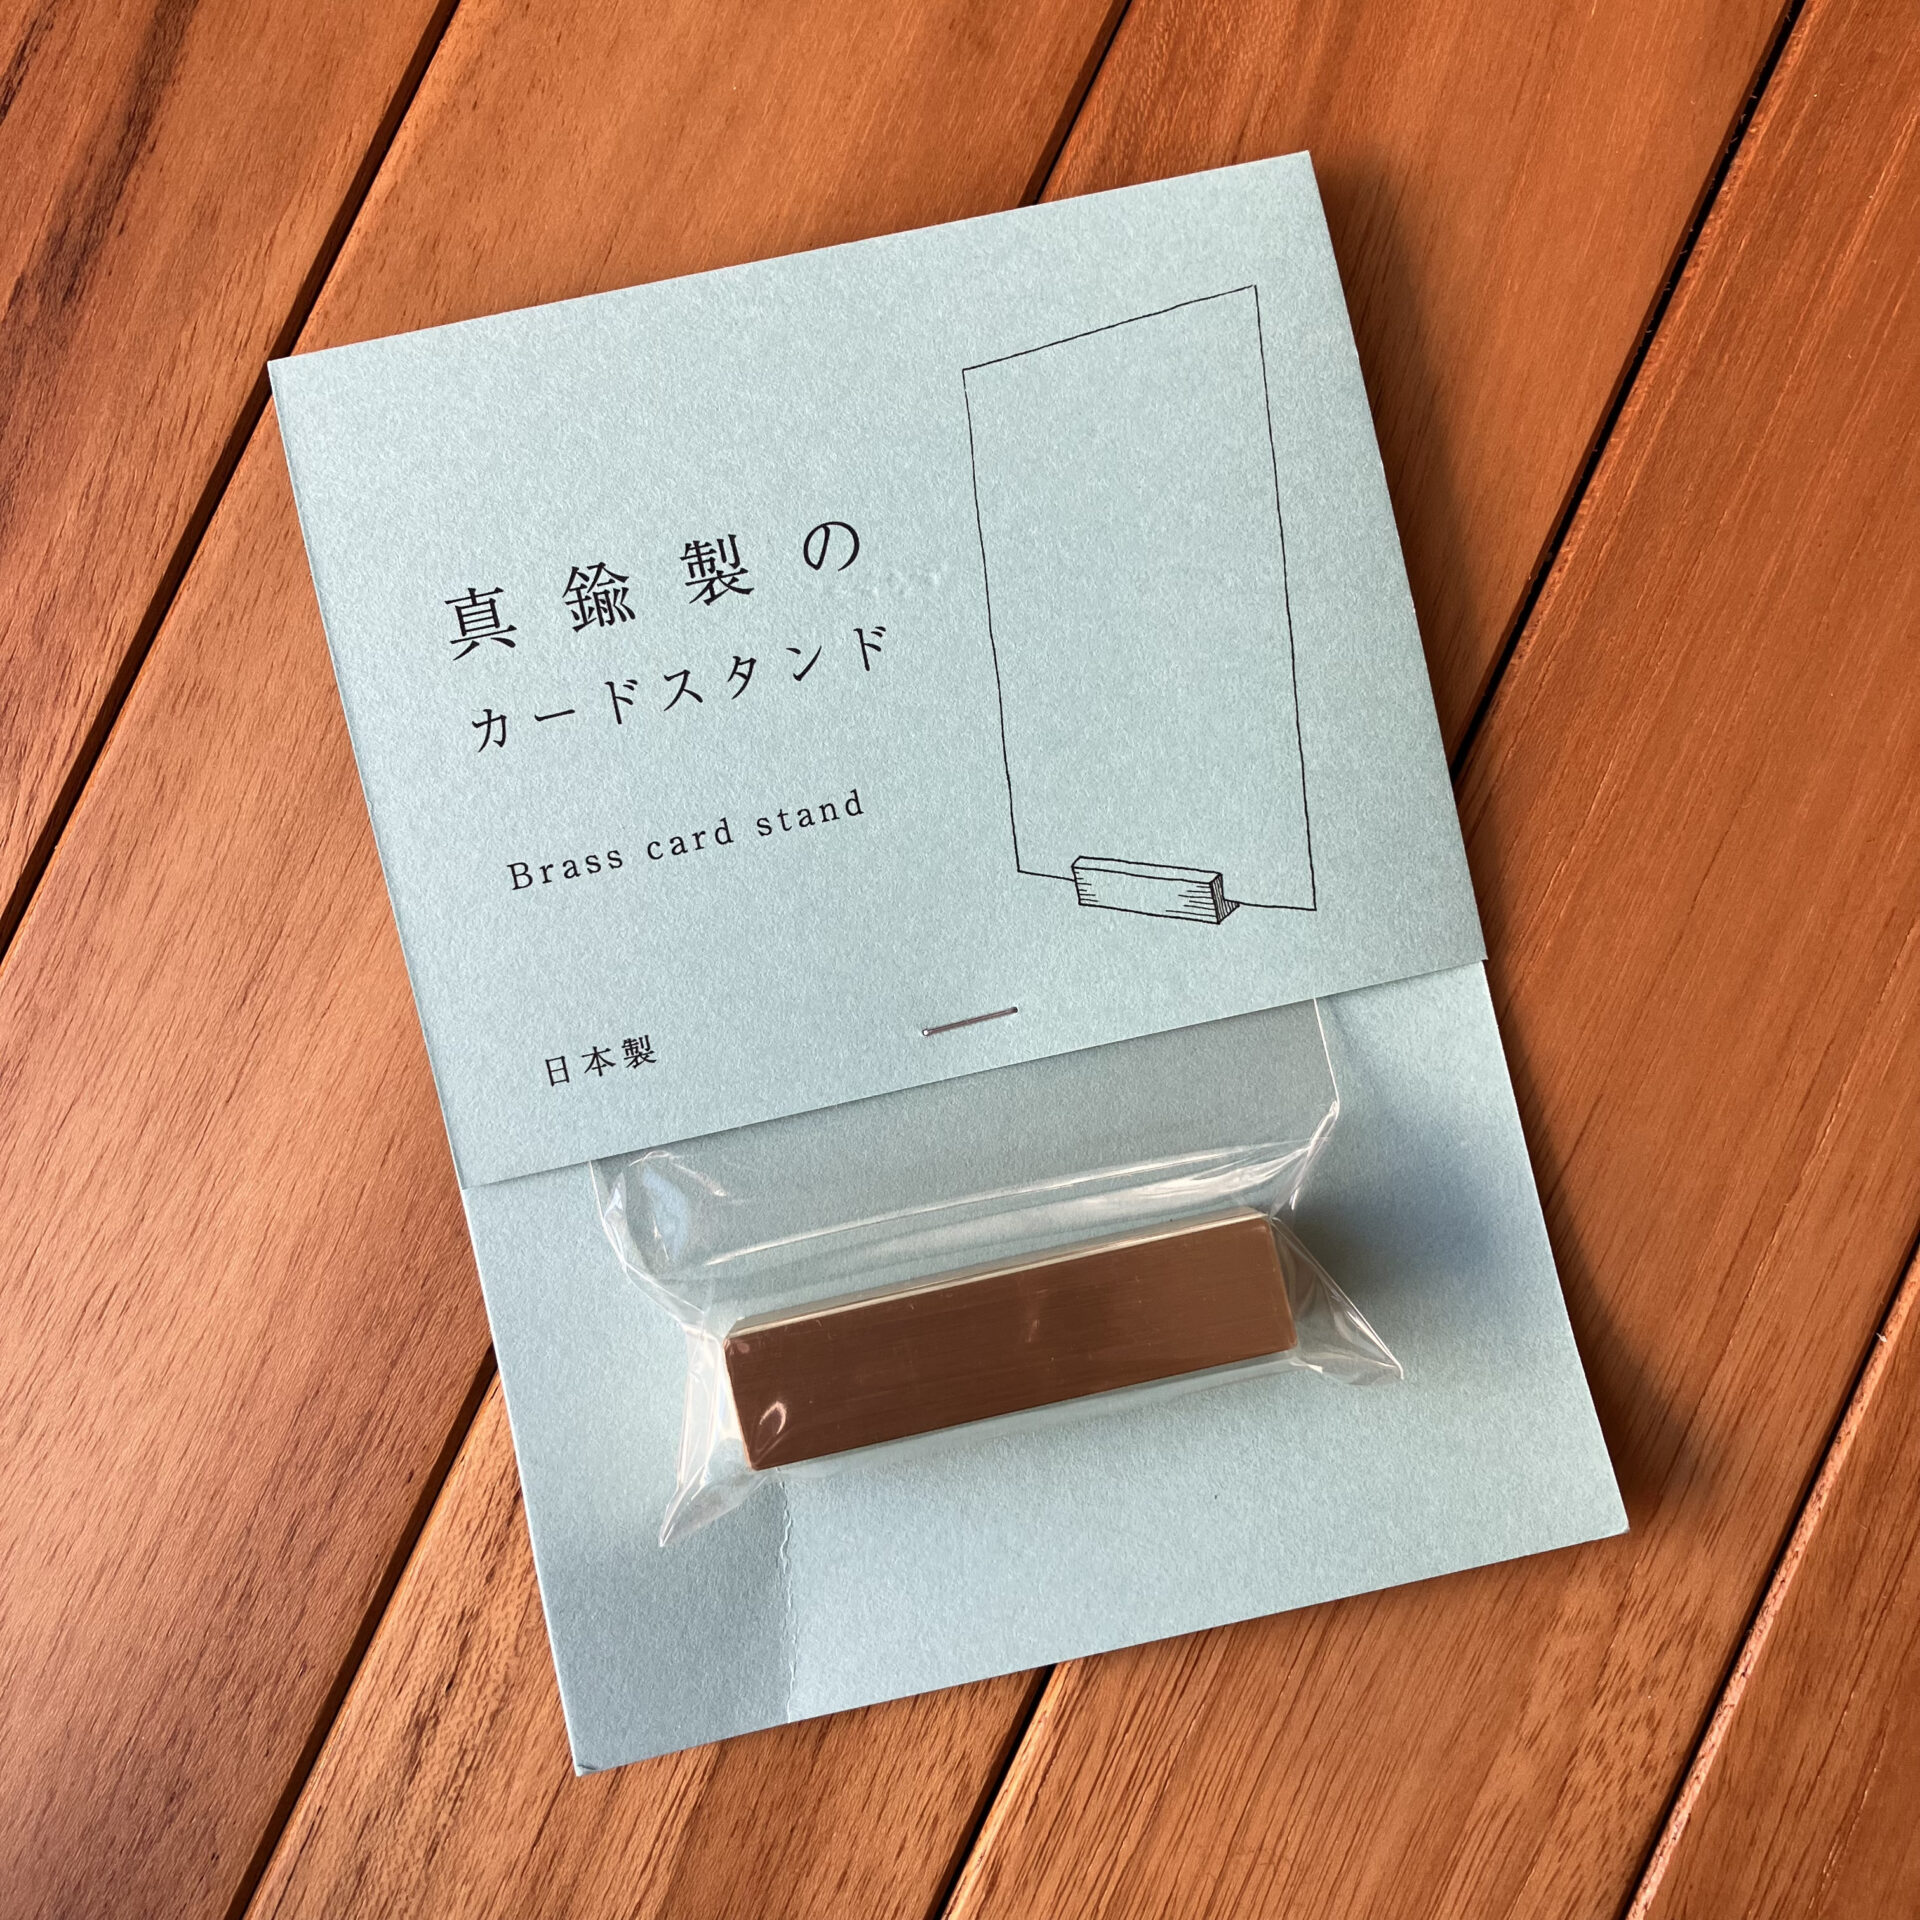 真鍮製のカードスタンド'Brass card stand' - 文房具愛好家fumiの備忘録